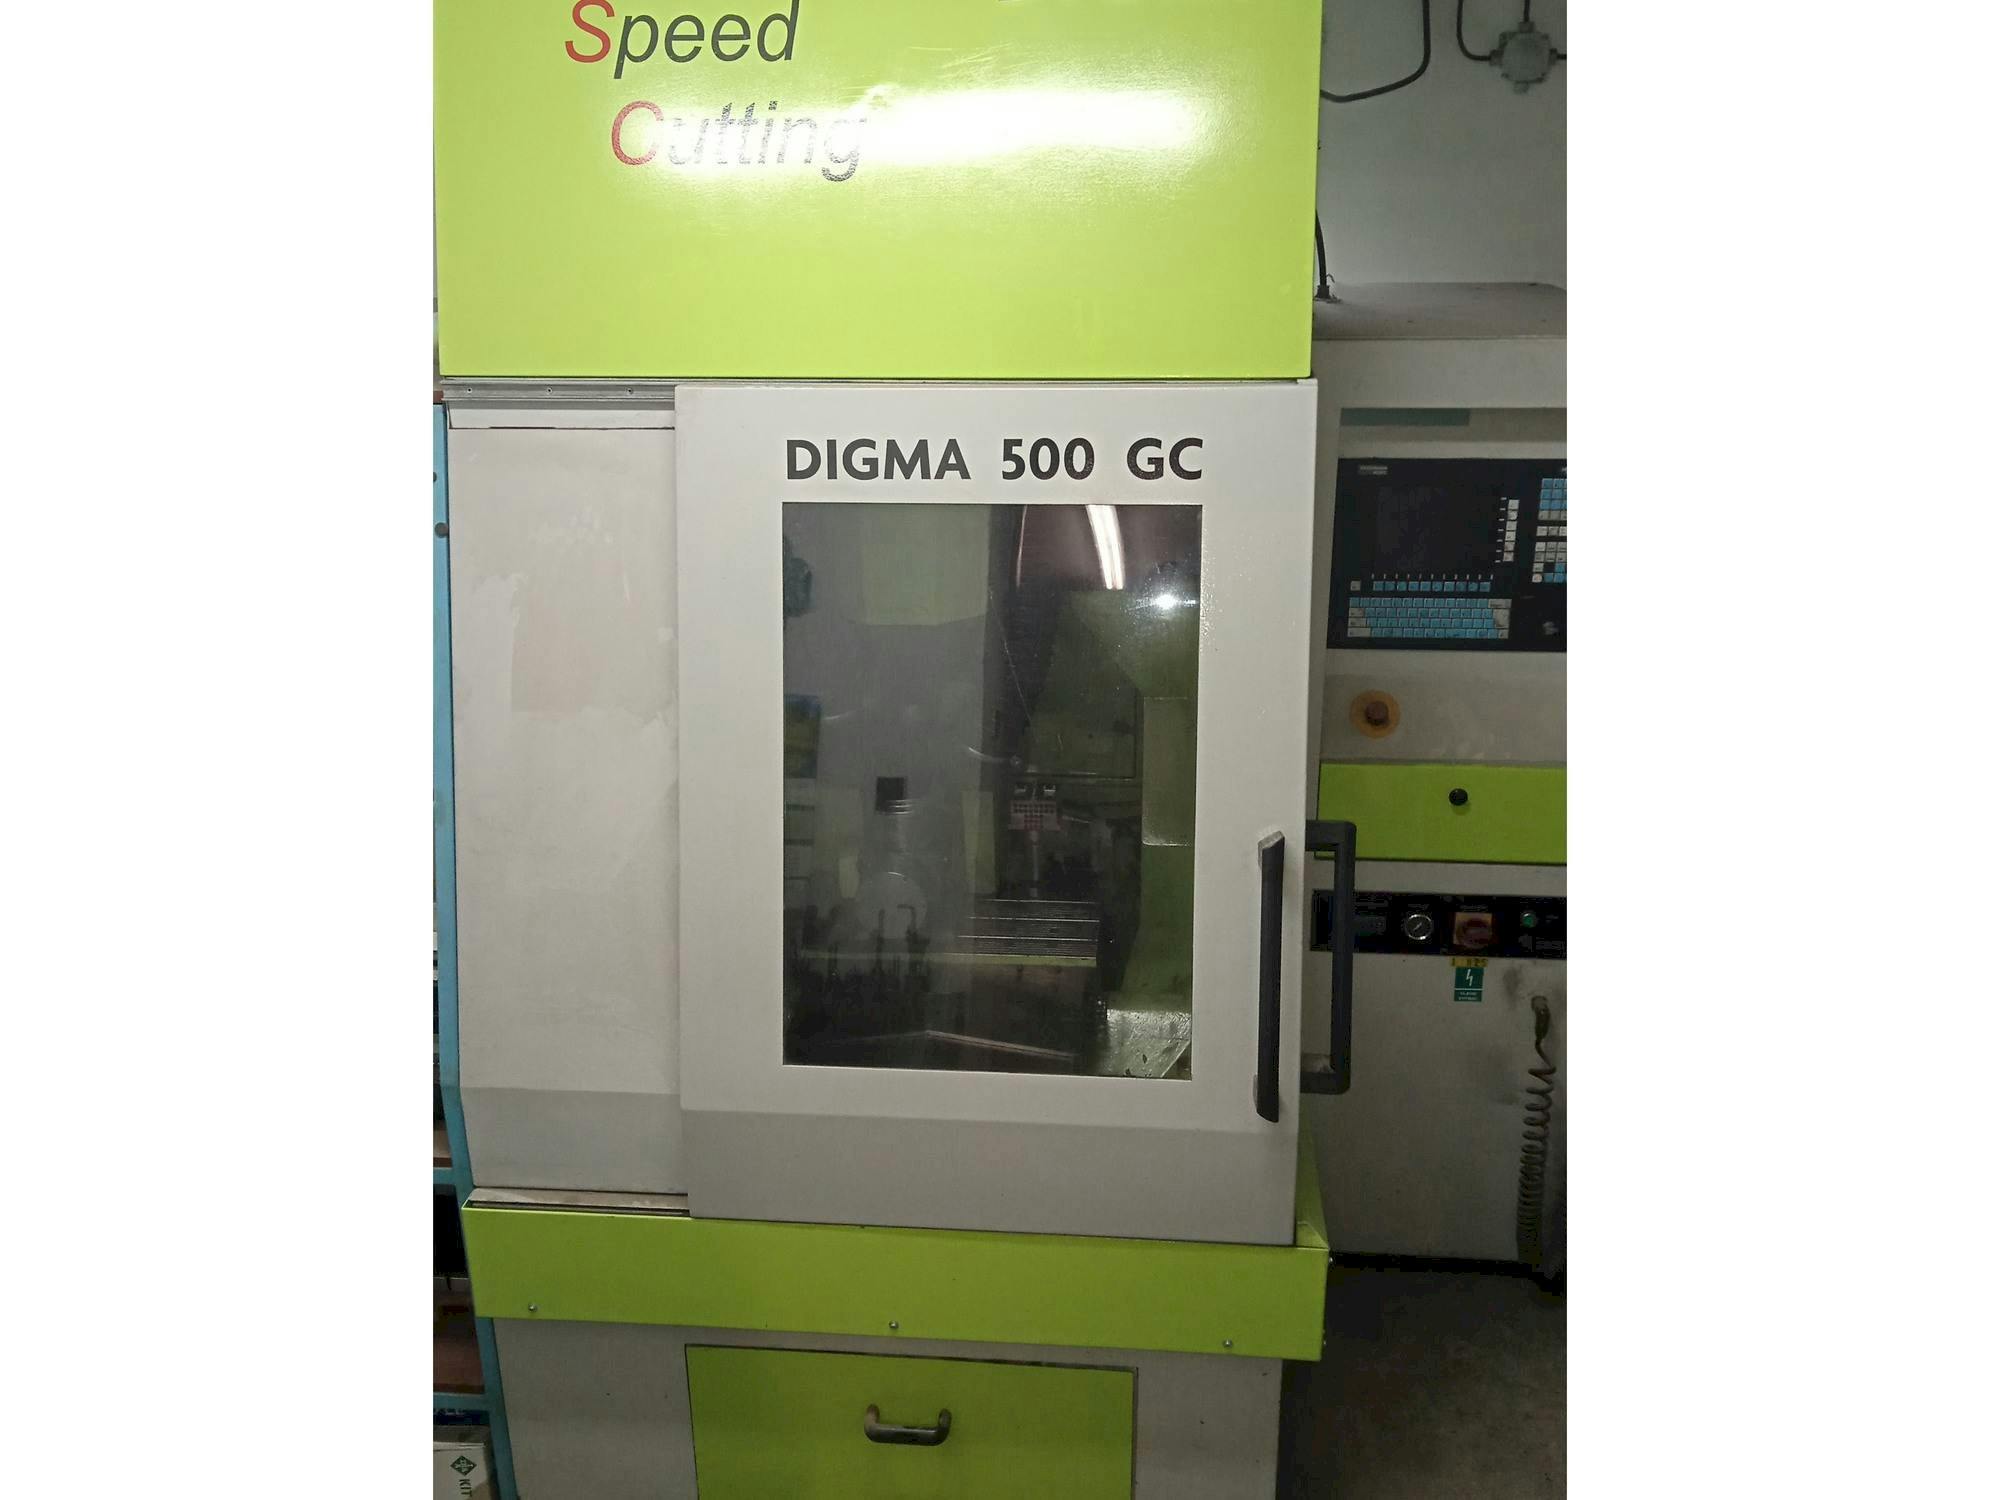 Exeron Digma 500 GC 5AX-maskinen framifrån